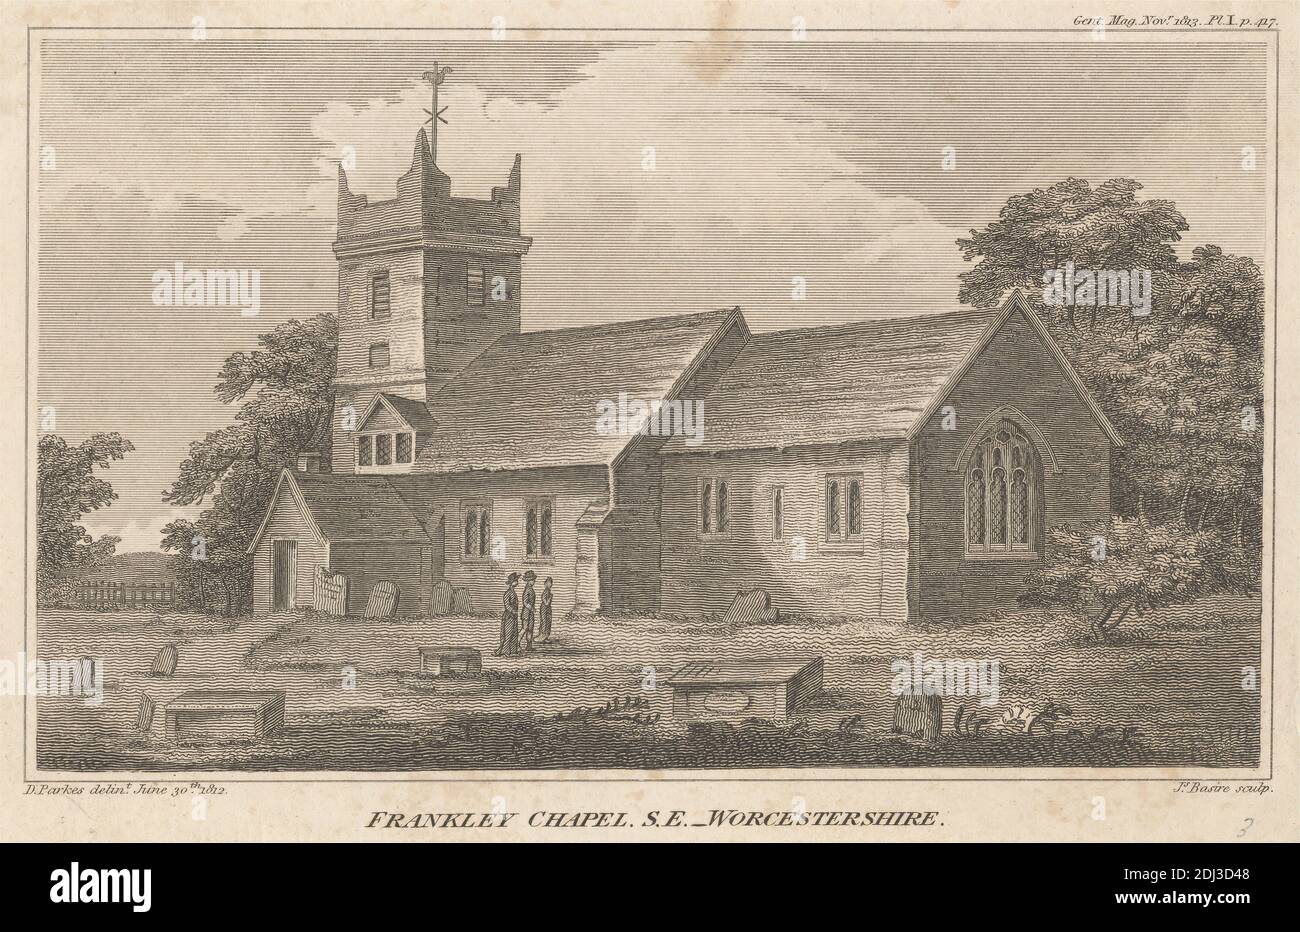 Frankley Chapel, S. E., Worcestershire, impresión hecha por James Basire, 1769–1822, británico, después de David Parkes, 1763–1833, británico, 1812, grabado en medio, ligeramente texturizado, papel de paloma crema, hoja: 4 1/2 x 6 7/8 pulgadas (11.5 x 17.5 cm) e imagen: 3 15/16 x 6 9/16 pulgadas (10 x 16.6 cm), tema arquitectónico, capilla, iglesia, nubes, cerca, hierba, sombreros, la revista Gentleman's Magazine, lápidas, árboles, caminar, mujeres, Inglaterra, Frankley Chapel, Halfshire cientos, Reino Unido, Worcestershire Foto de stock